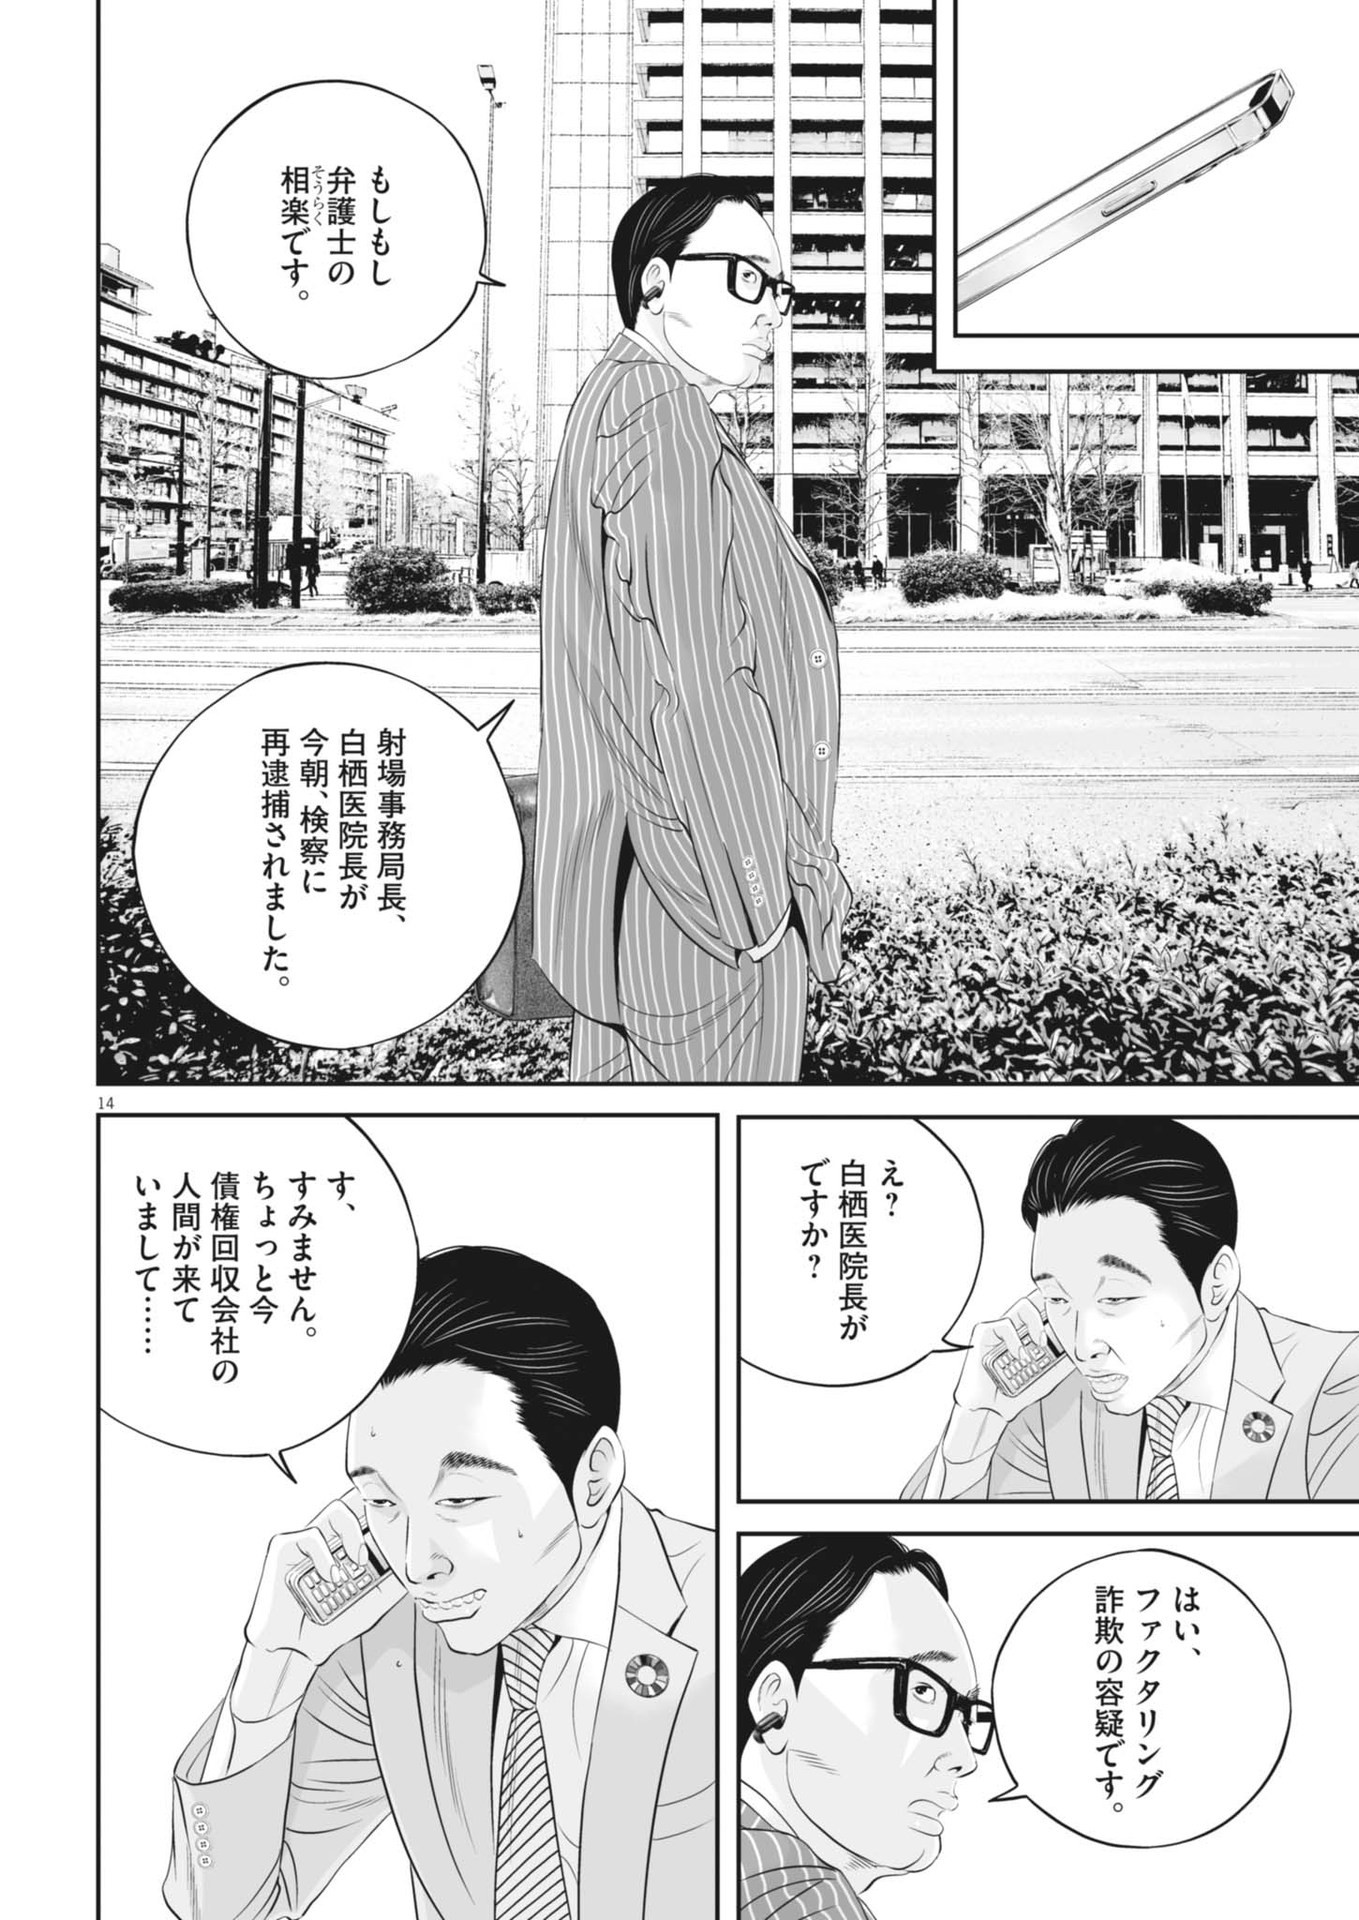 Kujou no Taizai - Chapter 99 - Page 14